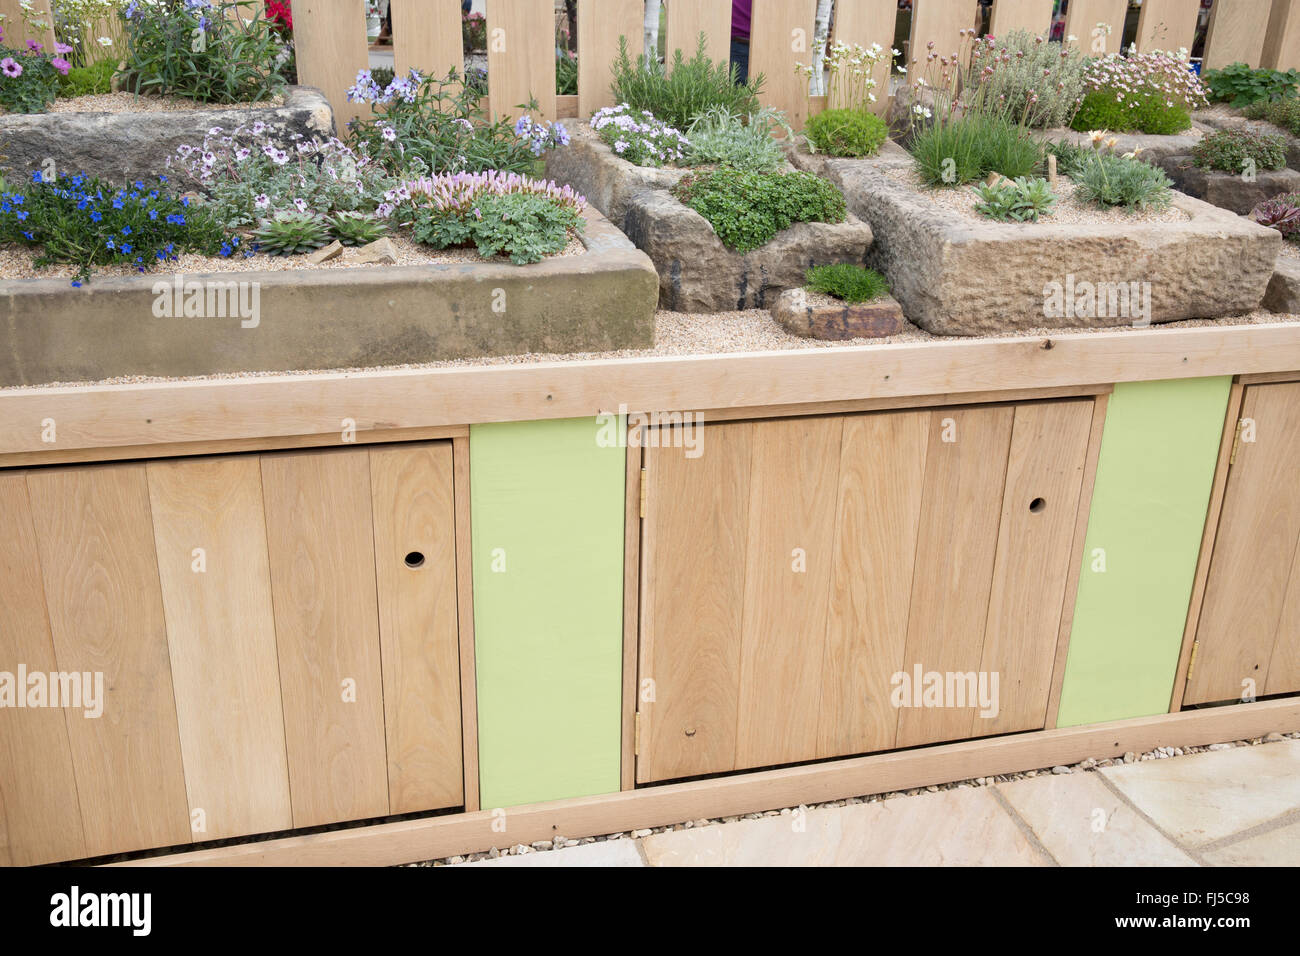 Kleine städtische Gartenschränke eine Ausstellung von alpinen Pflanzen, die in Steintrog Container Container UK angebaut werden Stockfoto